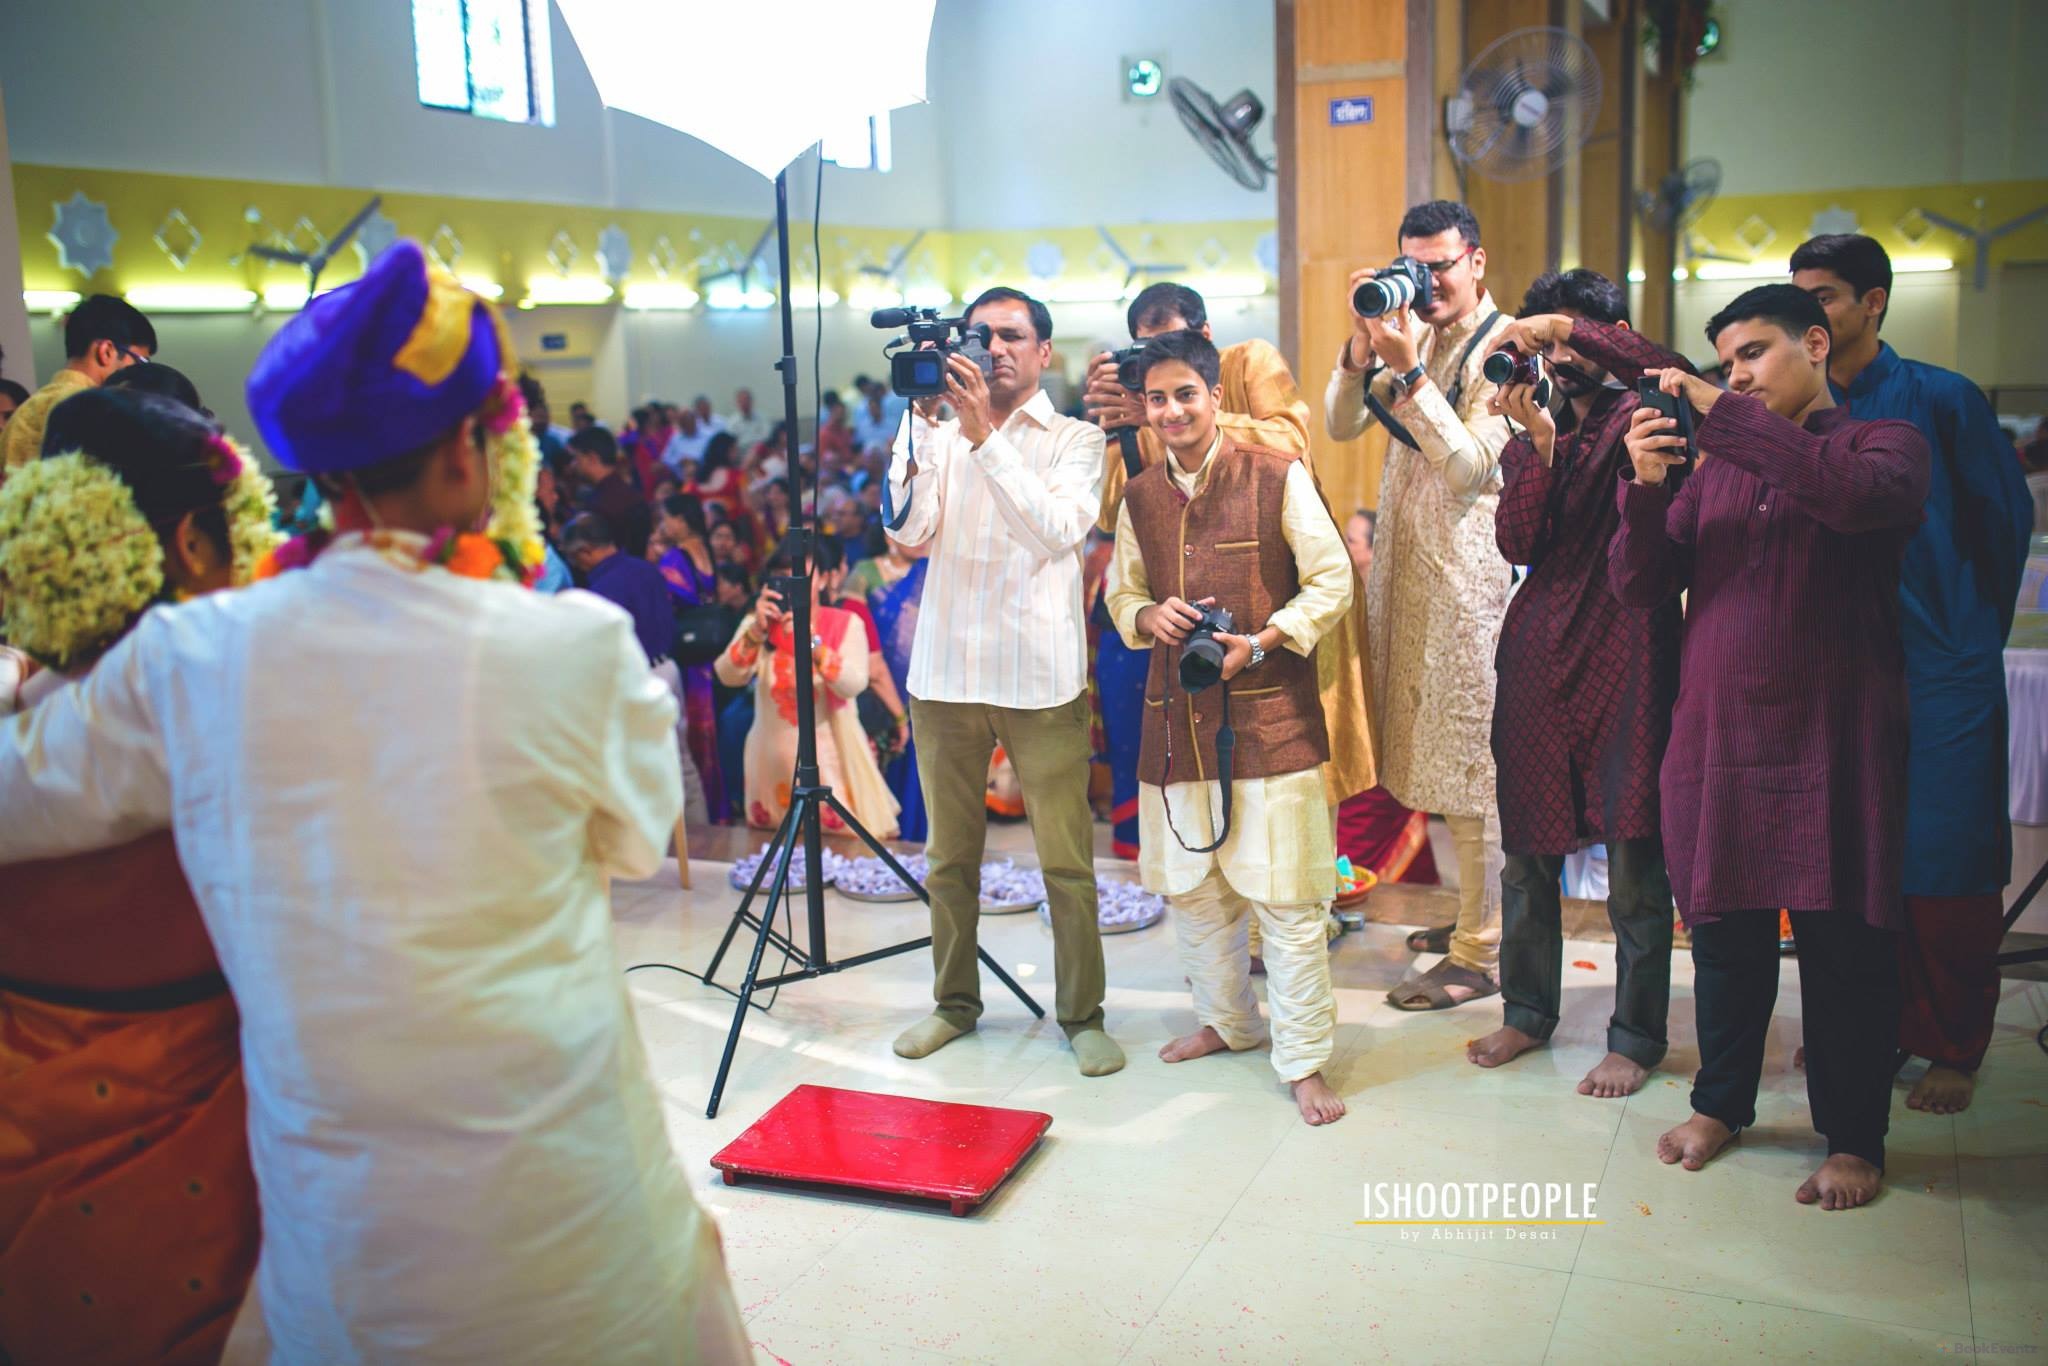 Ishootpeople Wedding Photographer, Mumbai